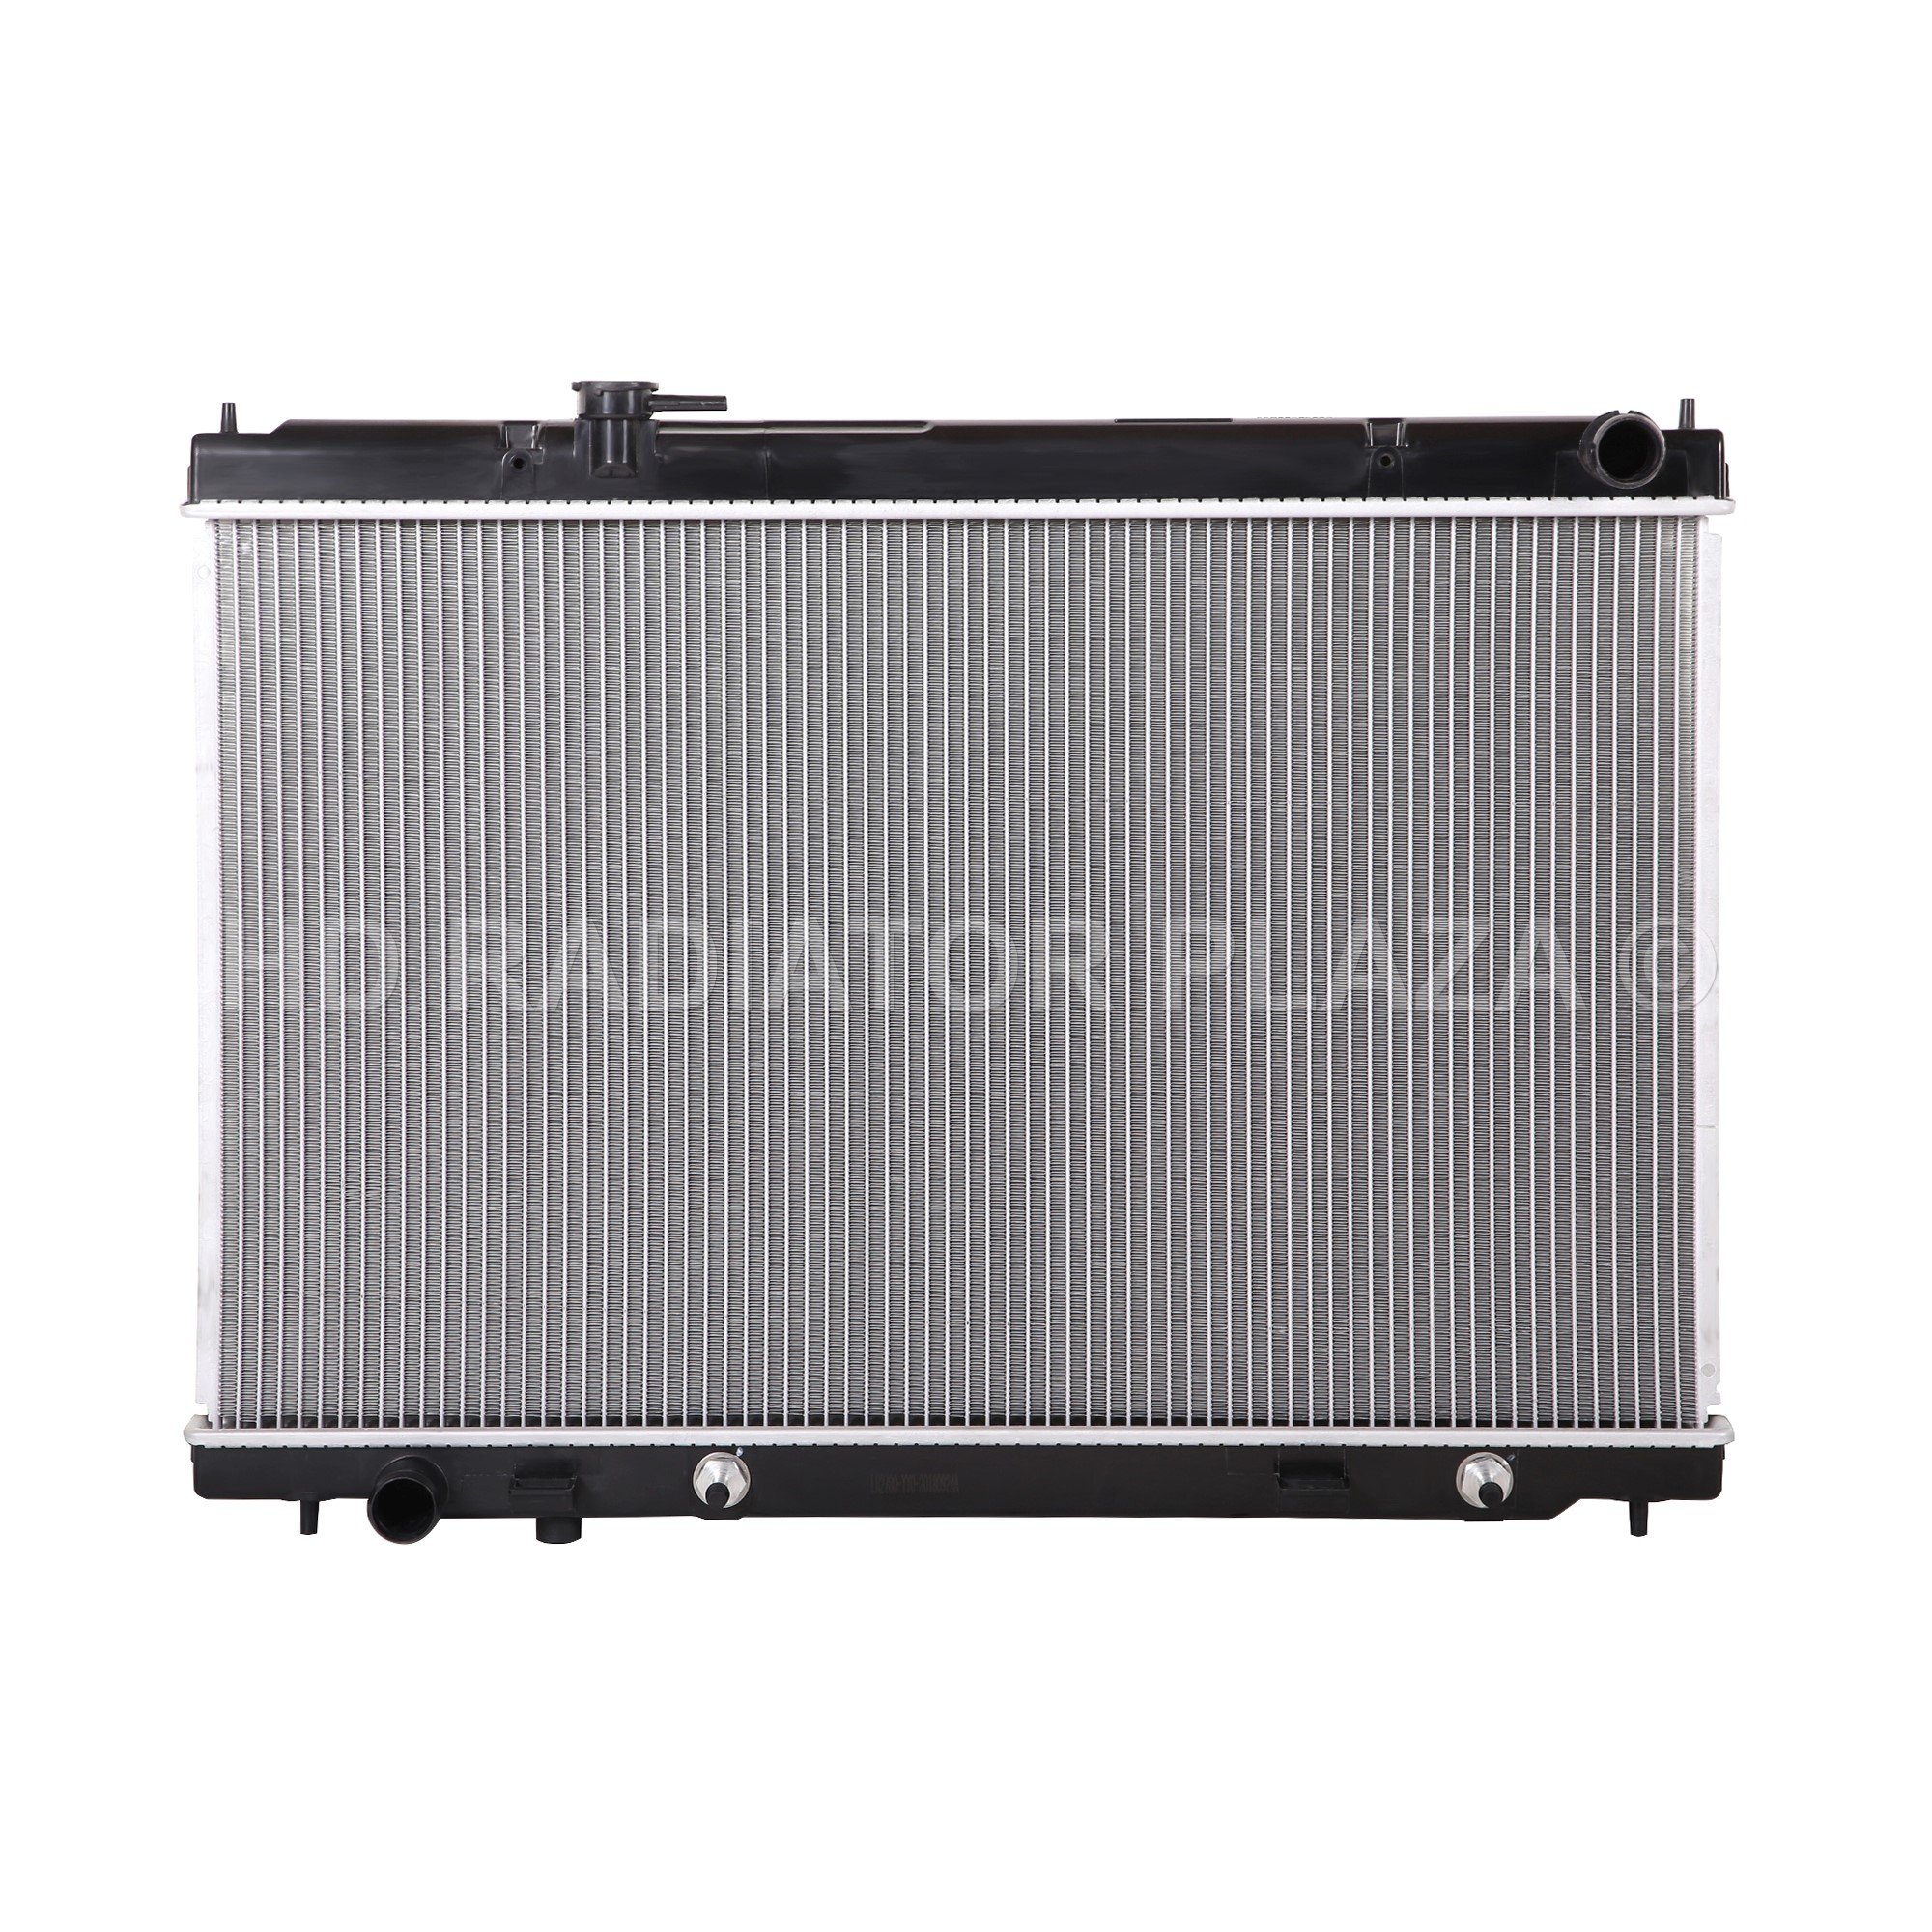 RAD2780 - Radiator for 06-10 Infiniti M35 3.5L V6